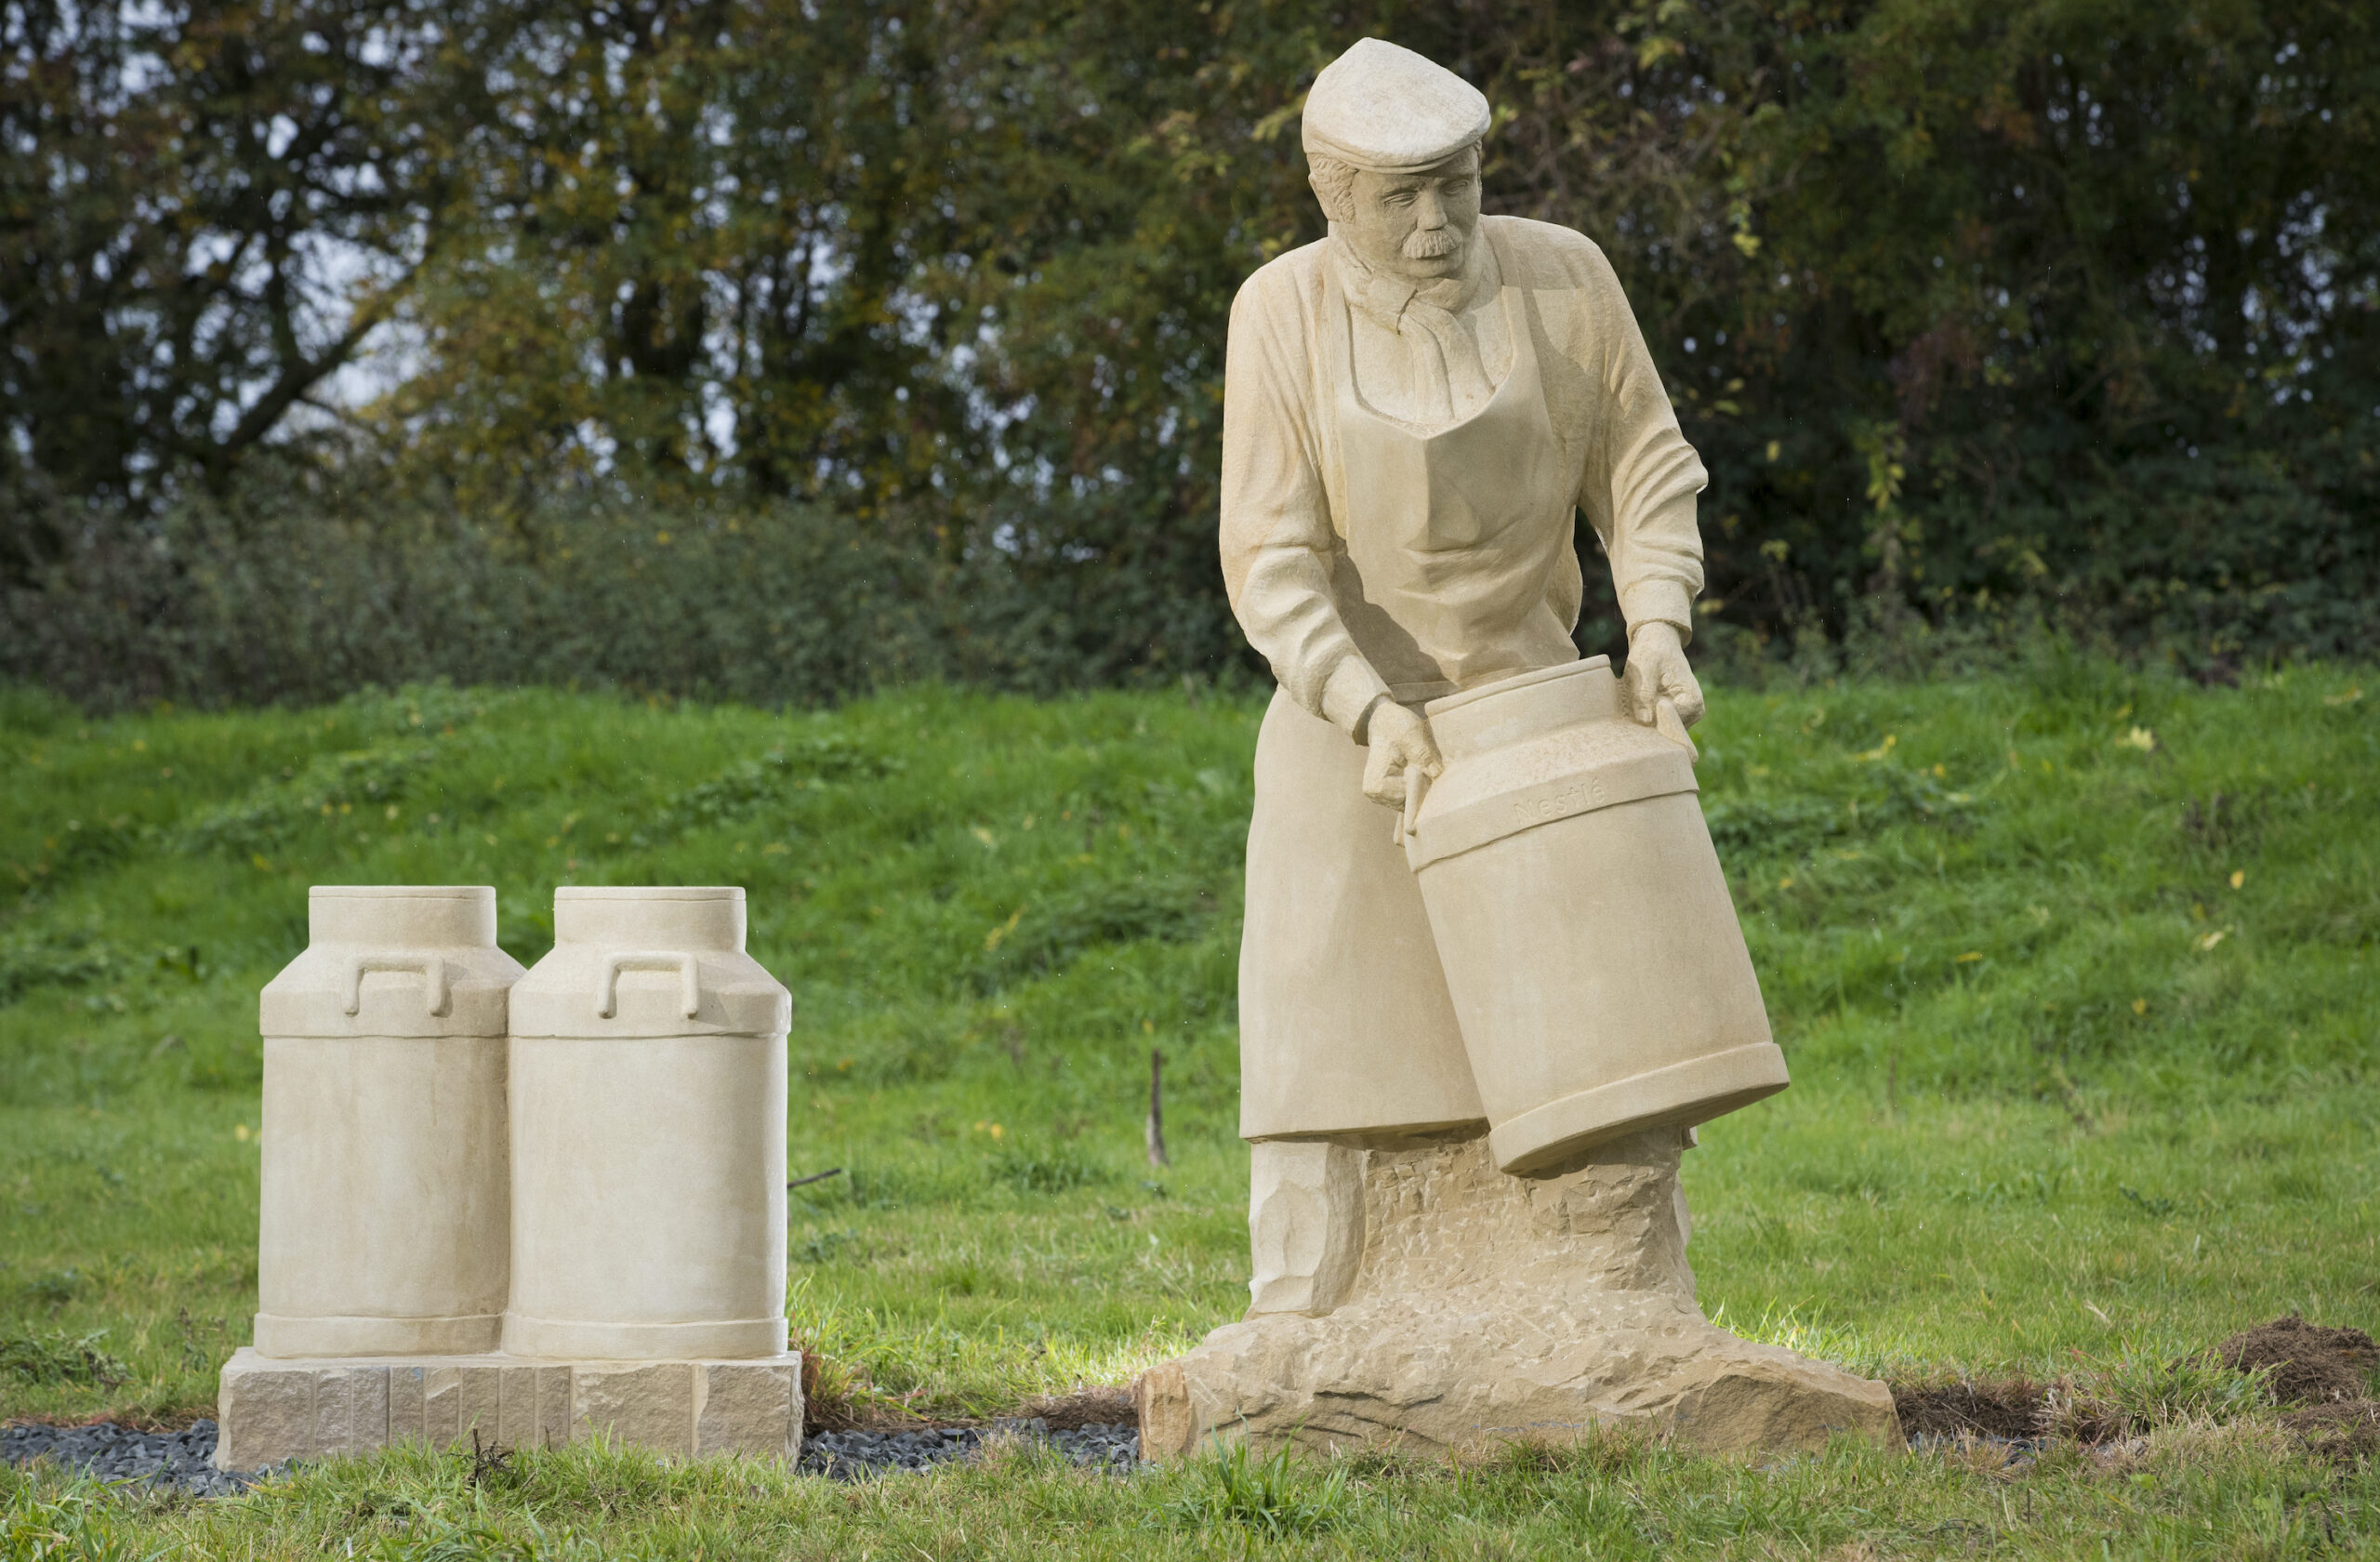 Stone sculpture of farmer in field